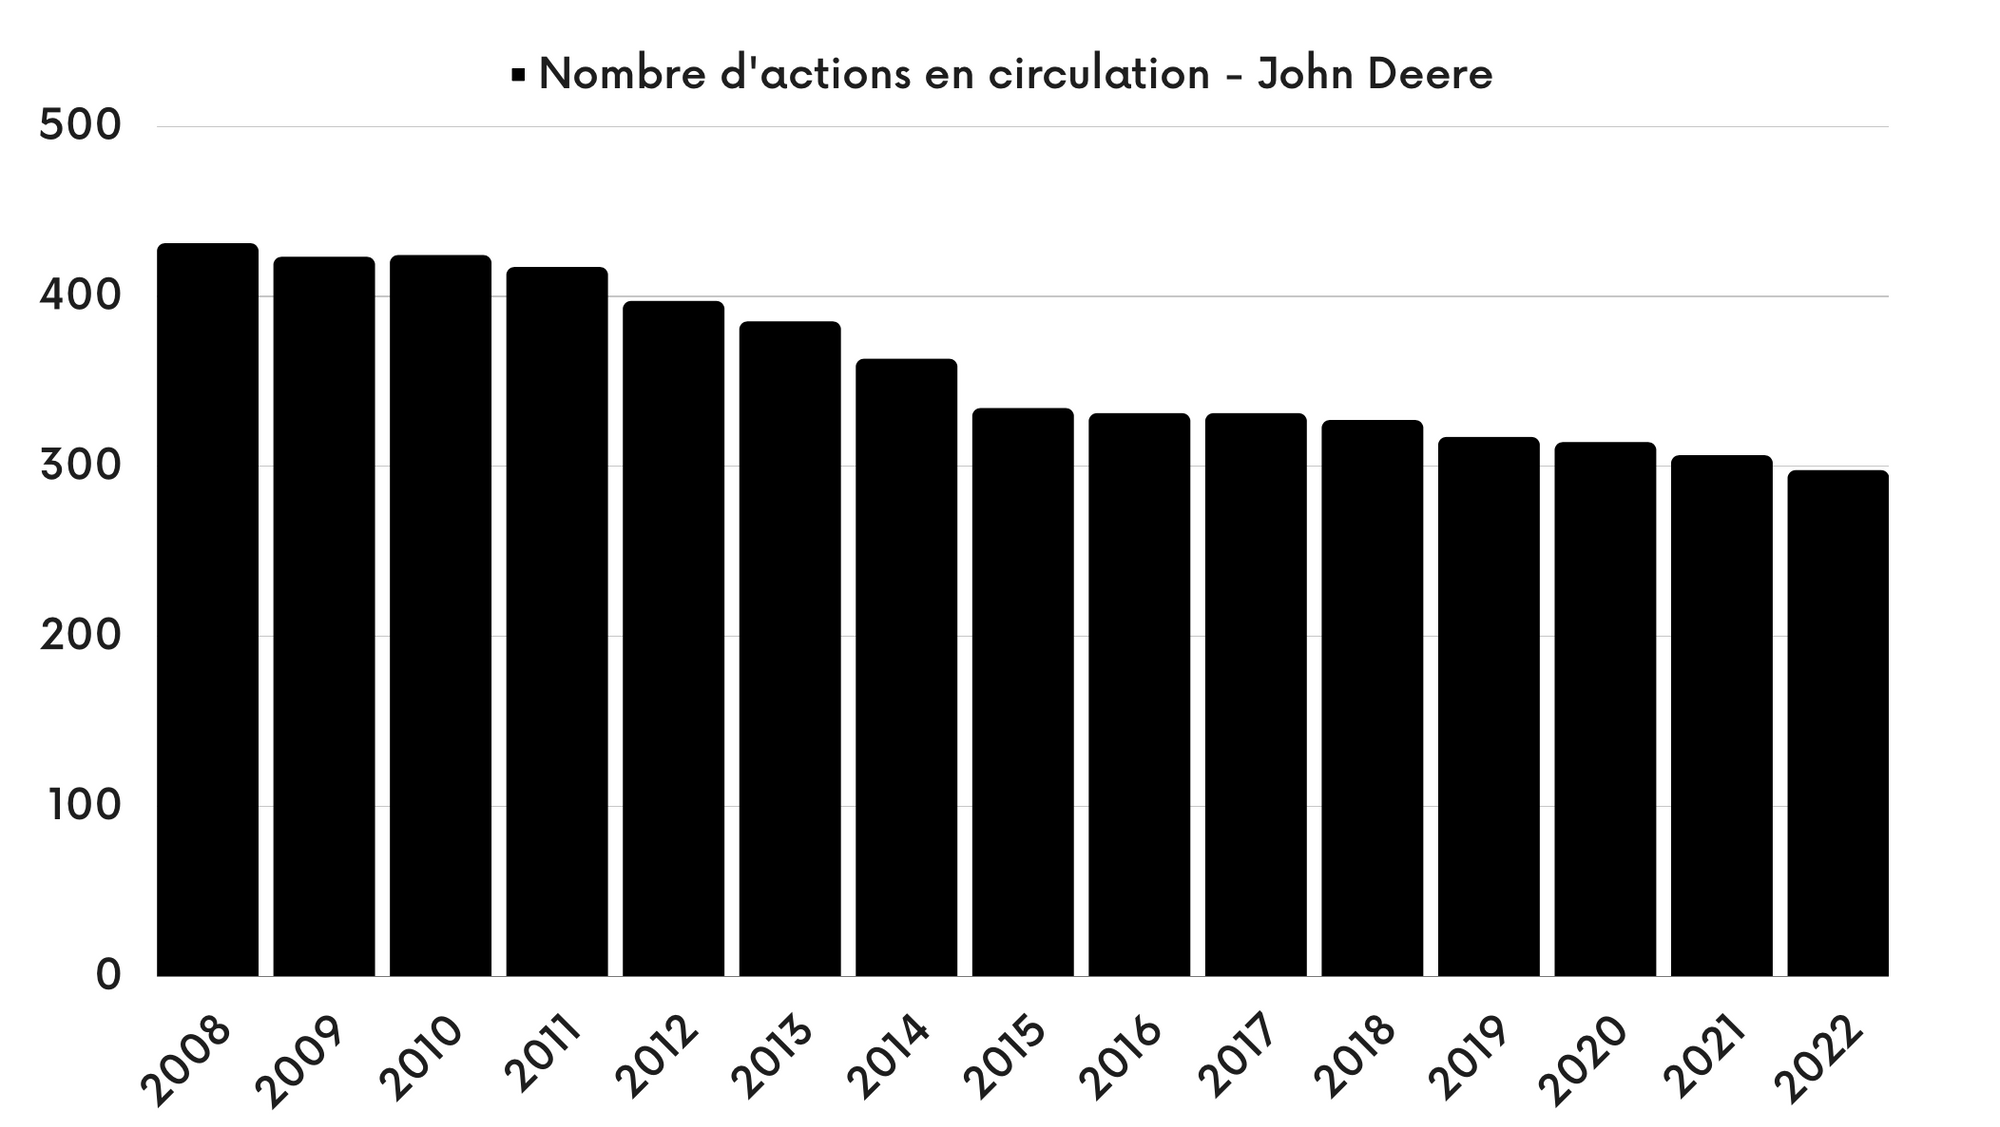 John Deere - Nombre d'actions en circulation